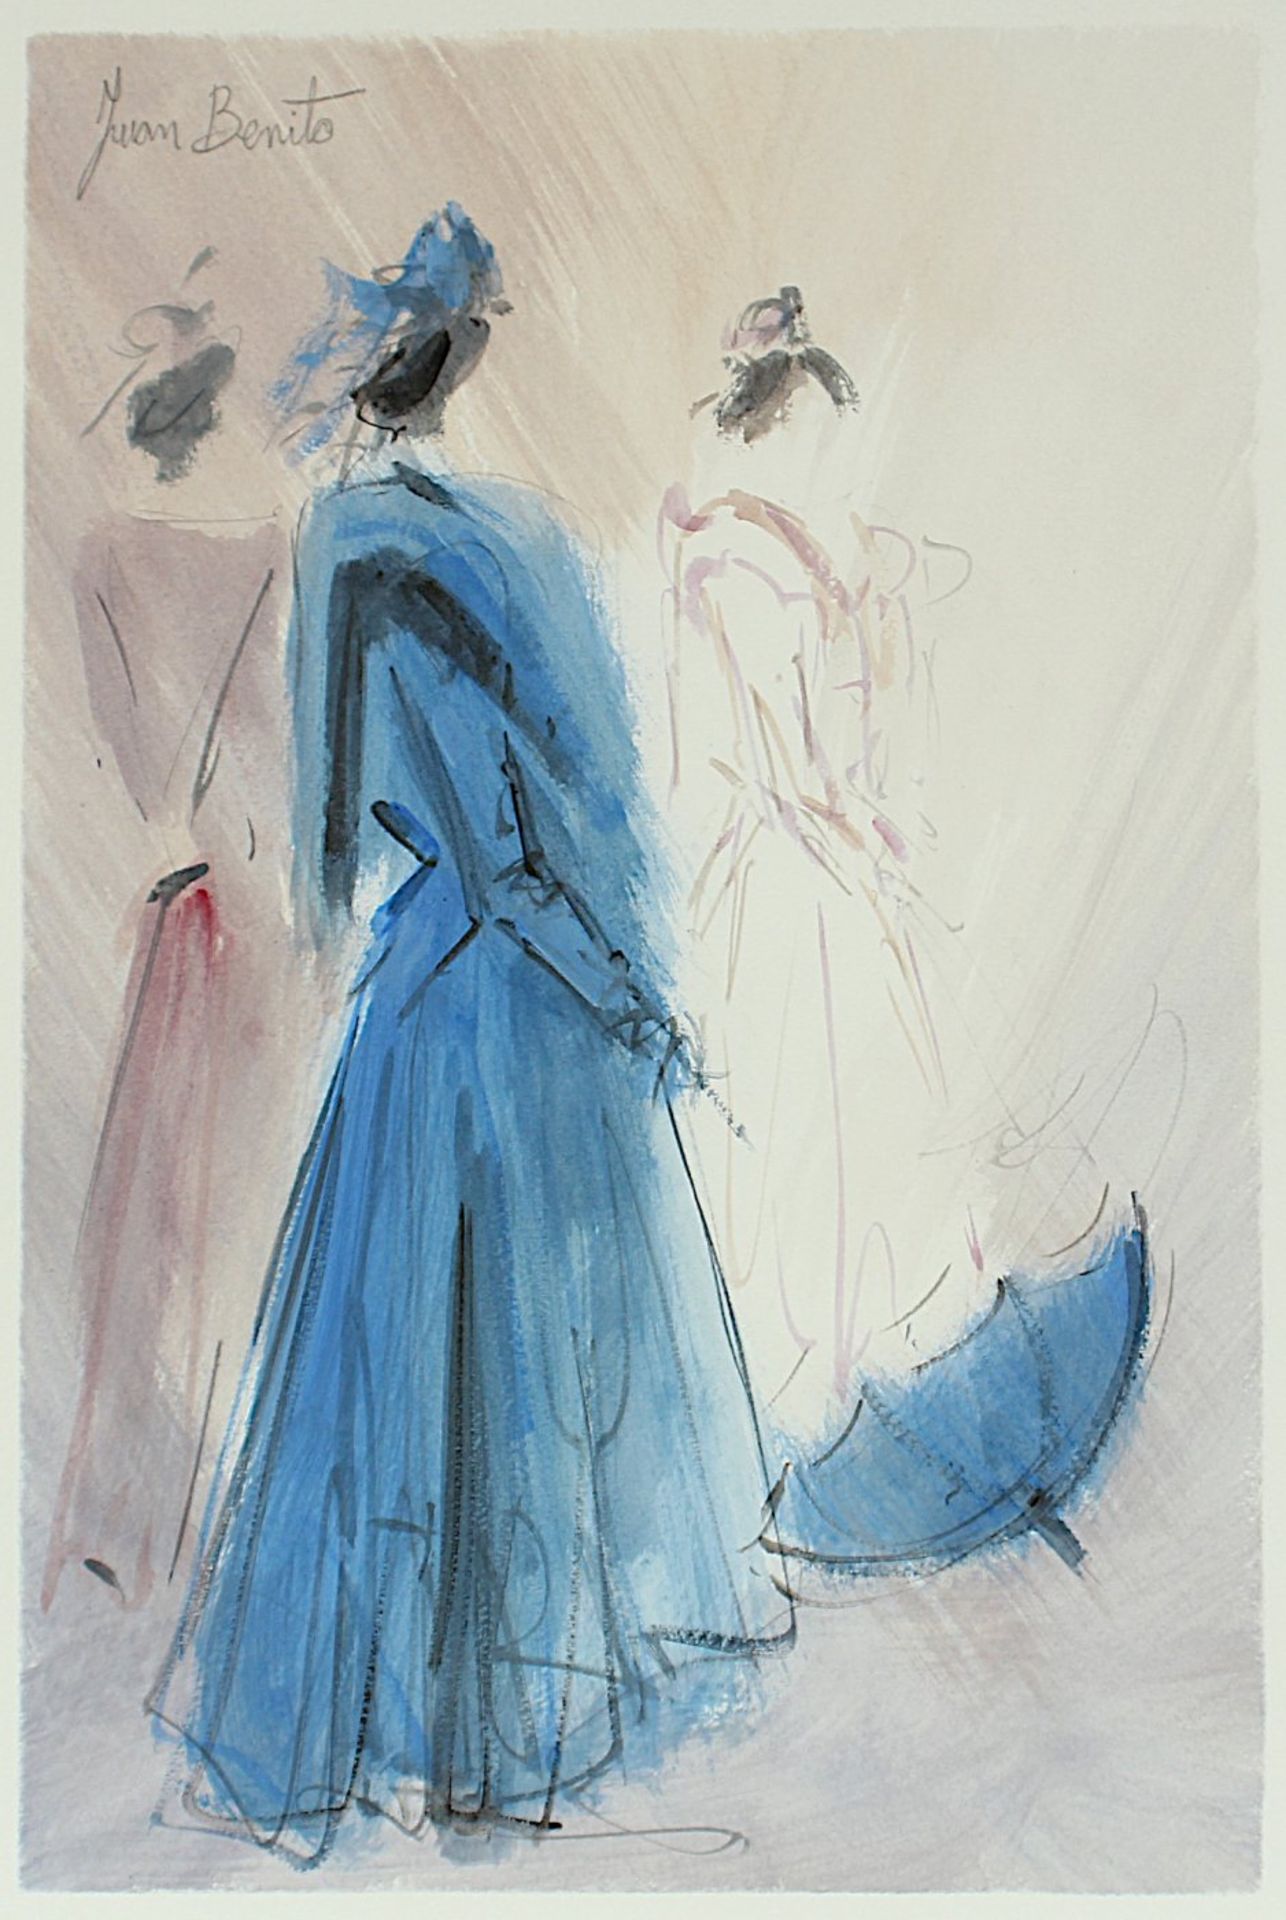 BENITO, Juan (*1944), "Drei Frauen", Aquarell/Papier, 51,5 x 36 (Passepartoutausschnitt), oben links